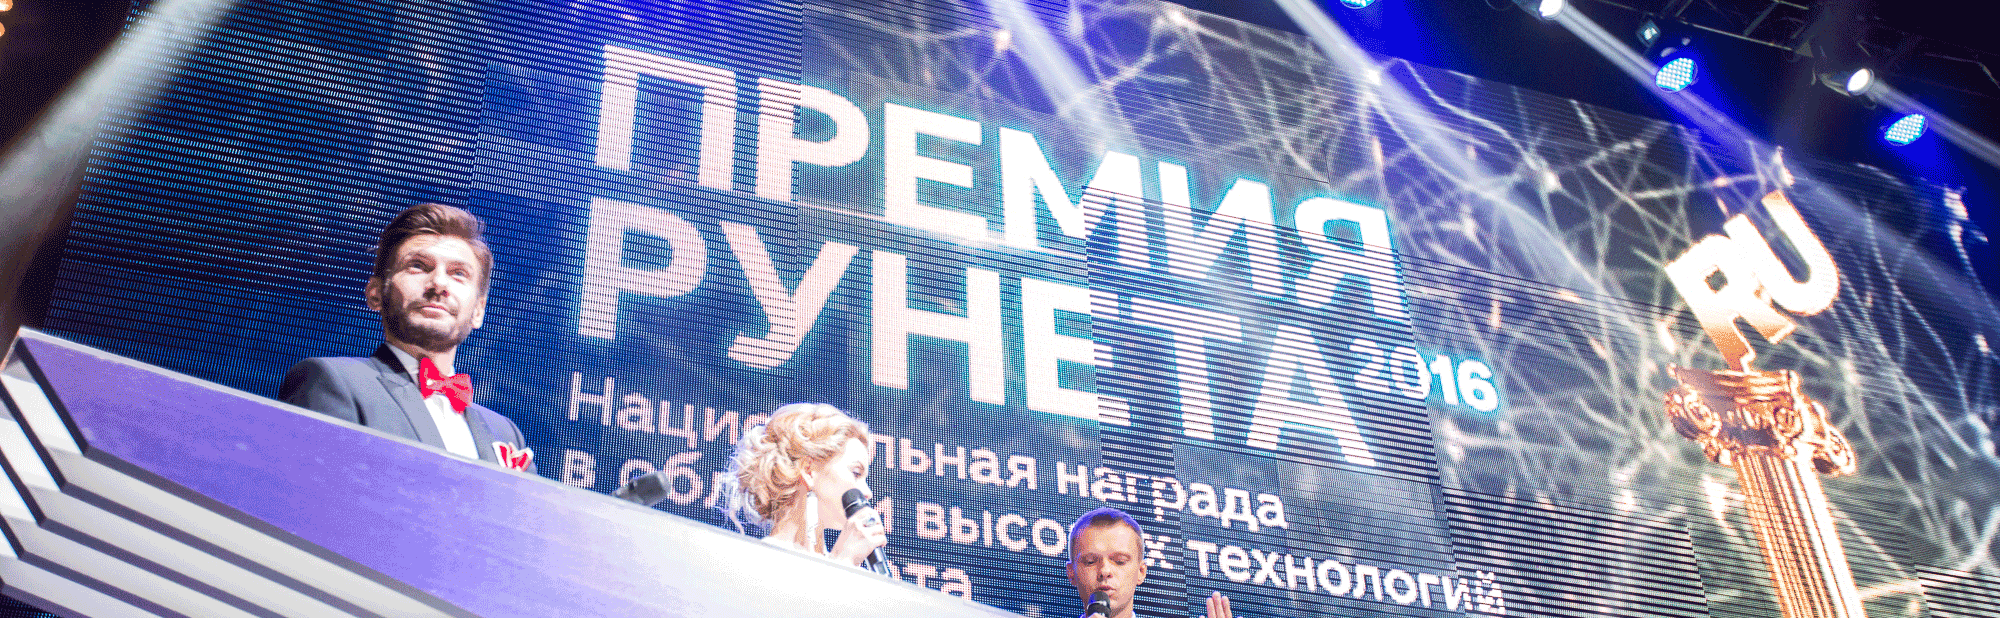 «Нетология» выиграла Премию Рунета